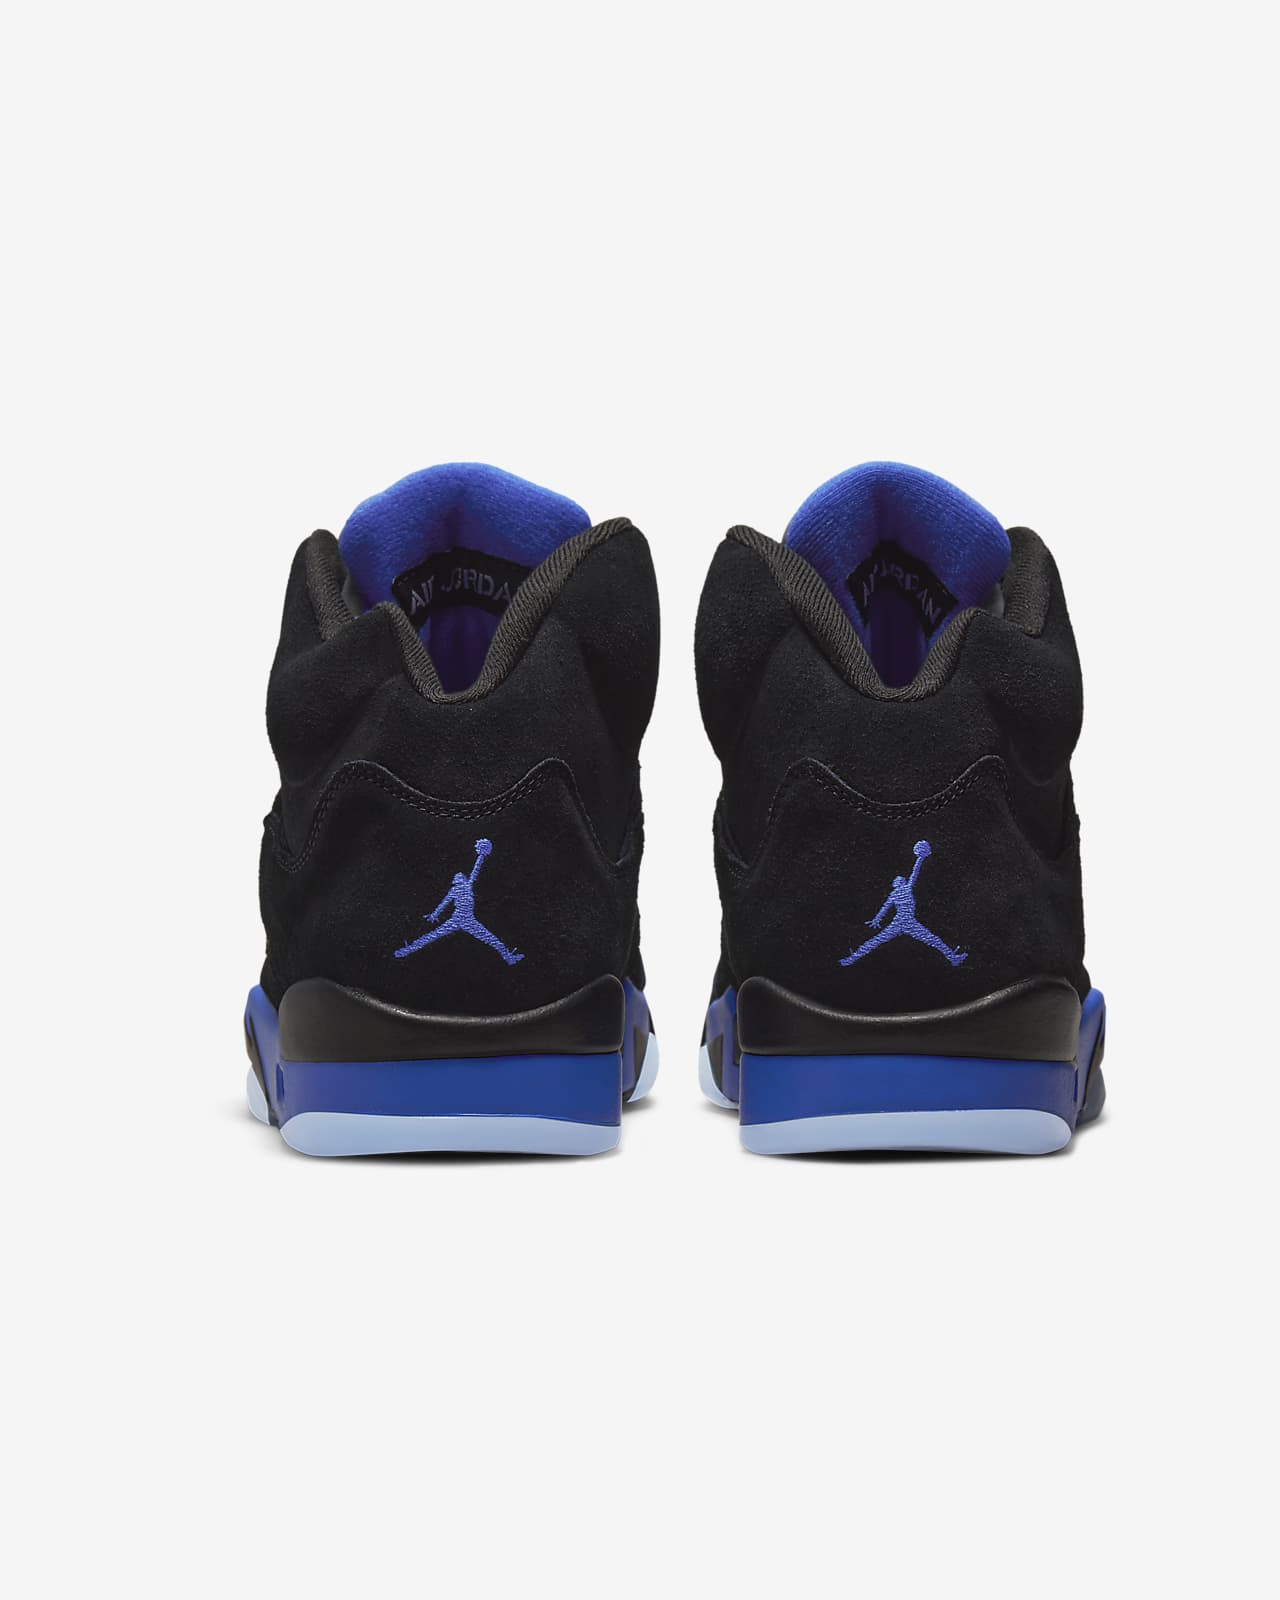 men's nike air jordan v shoes | Air Jordan 5 Retro Men's Shoes